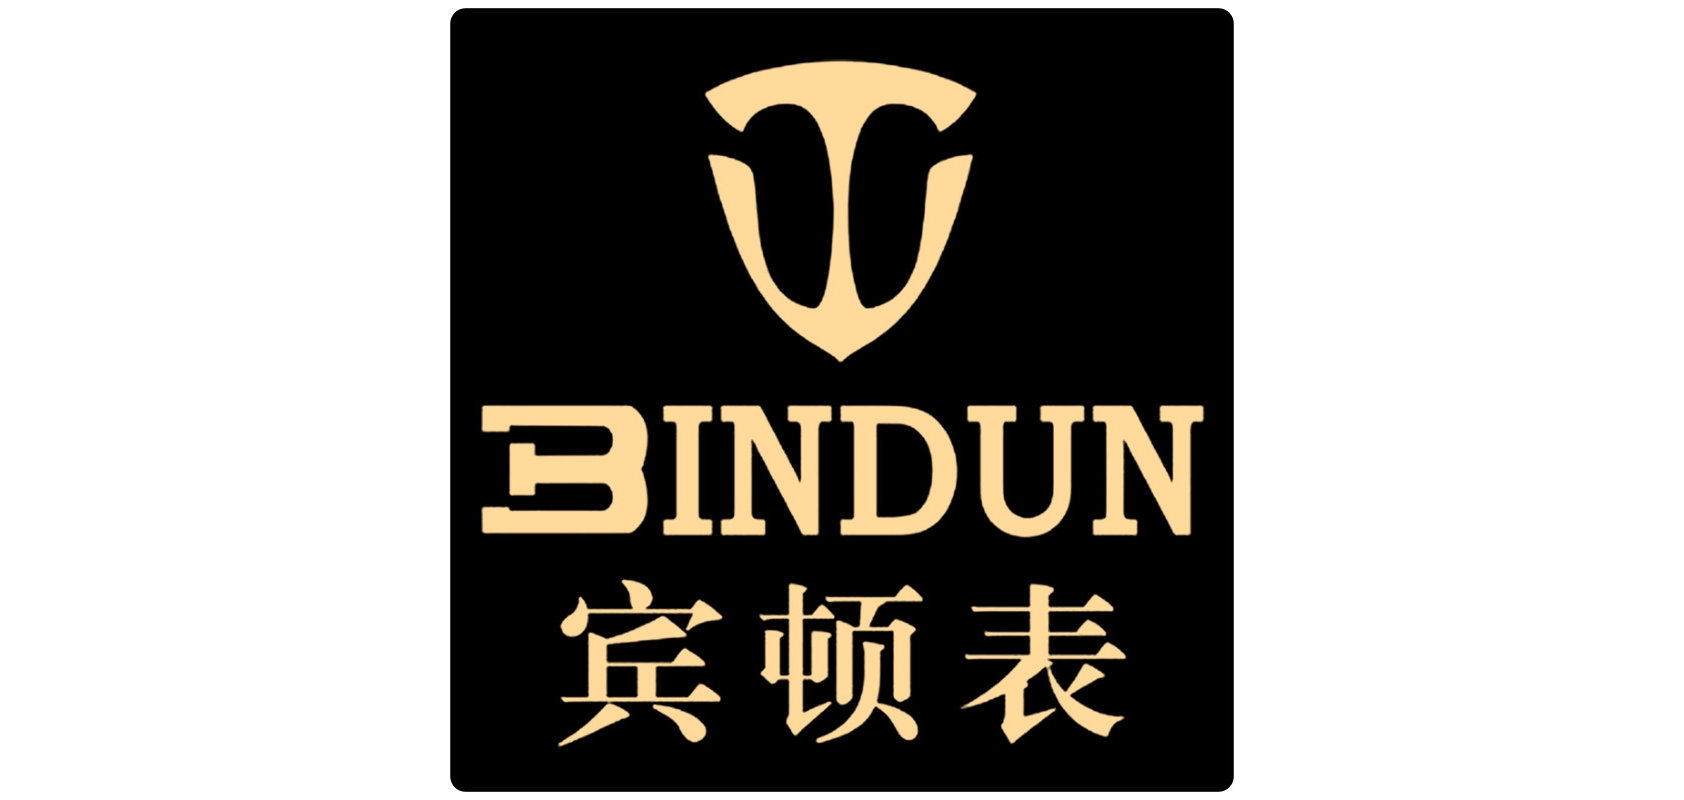 bindun是什么牌子_宾顿品牌怎么样?